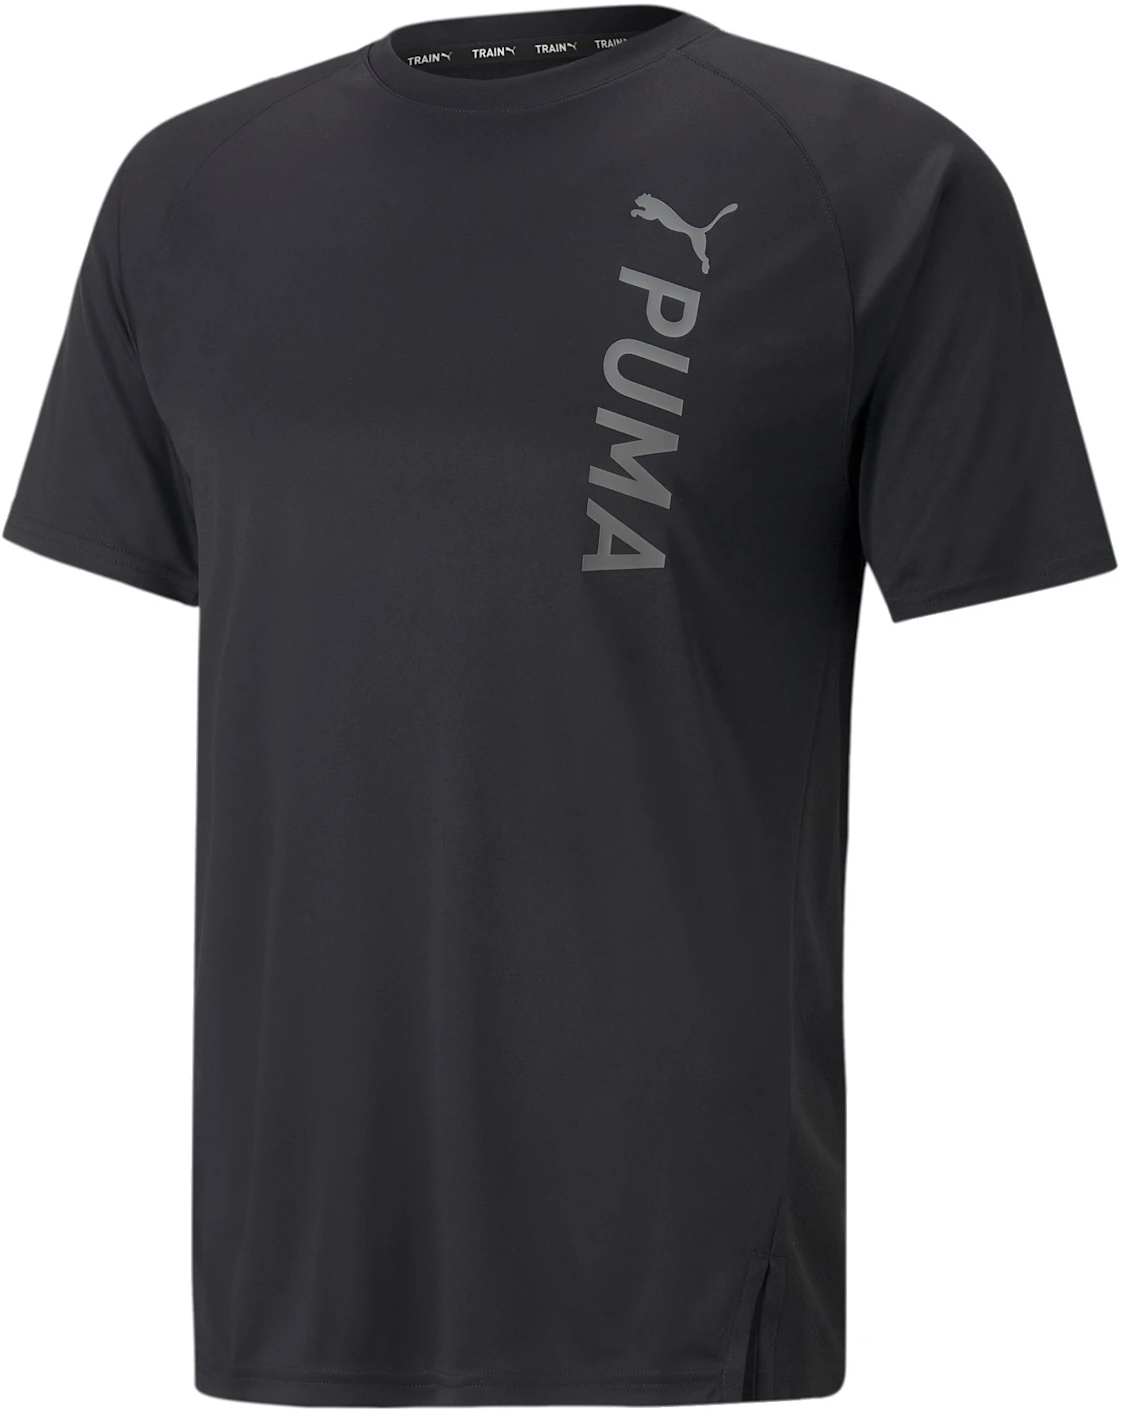 Pánské fitness tričko s krátkým rukávem Puma Fit